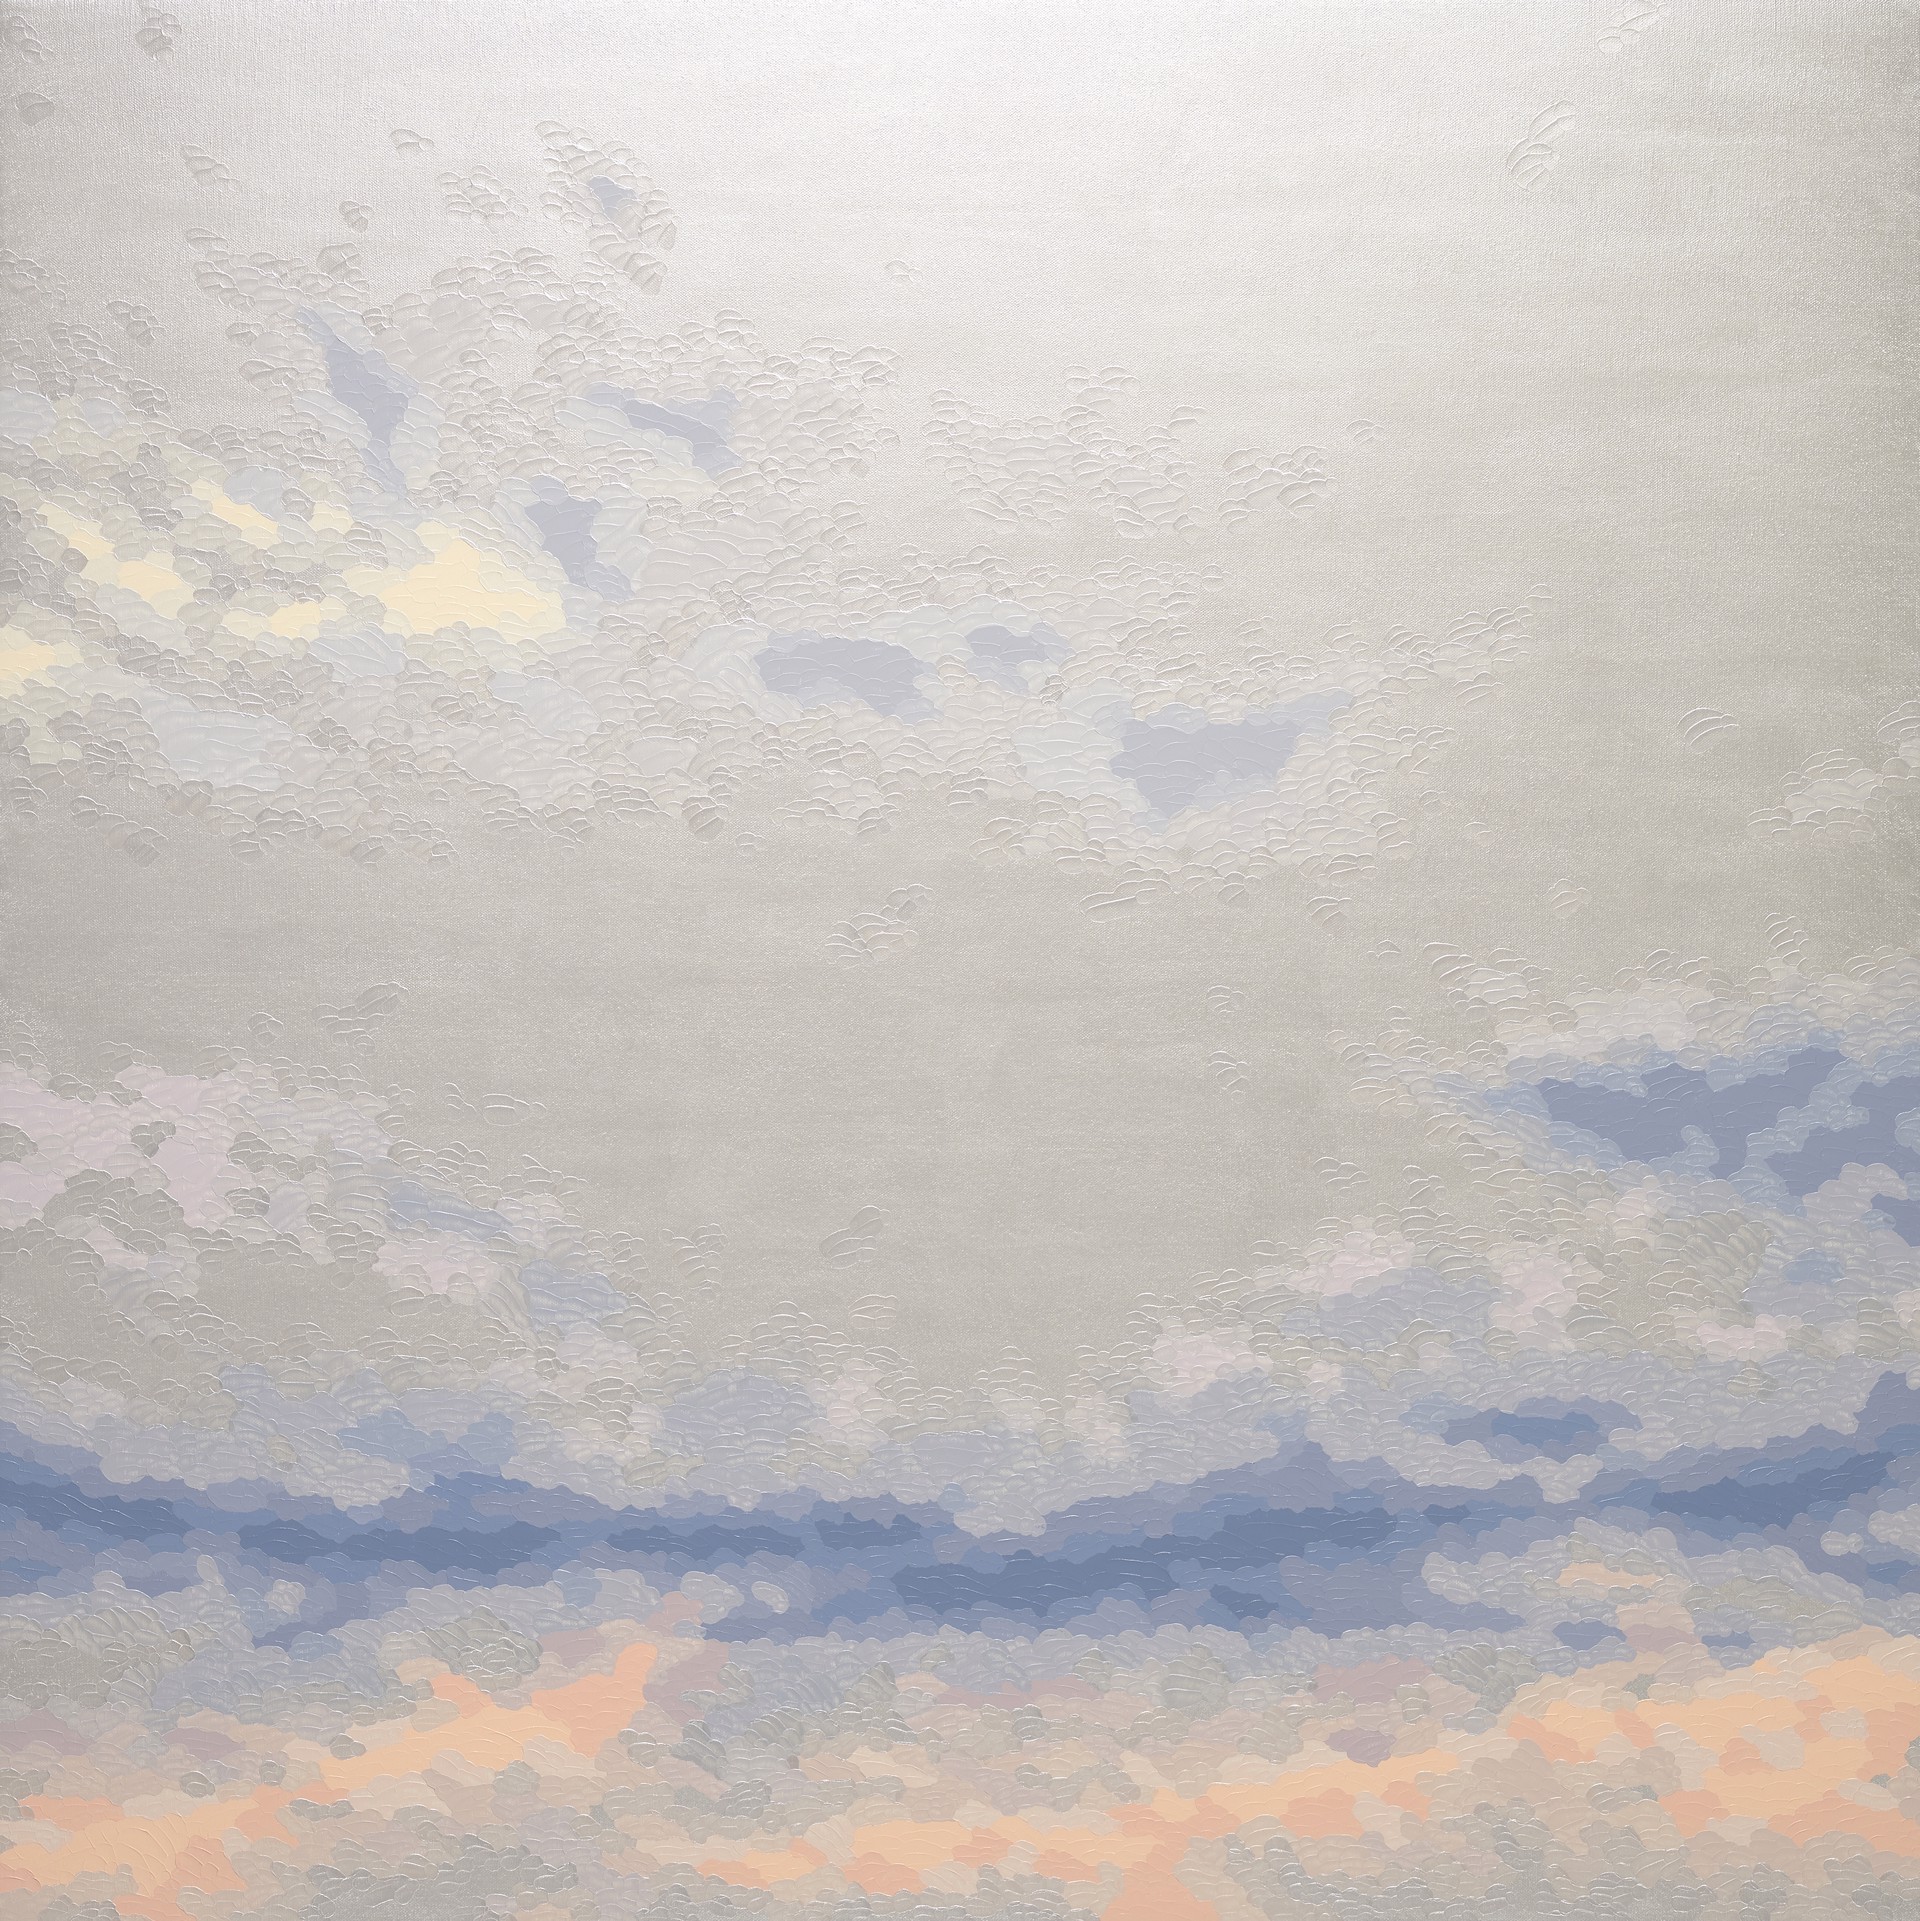 Pensive Skies (pearl) by Elaine Coombs